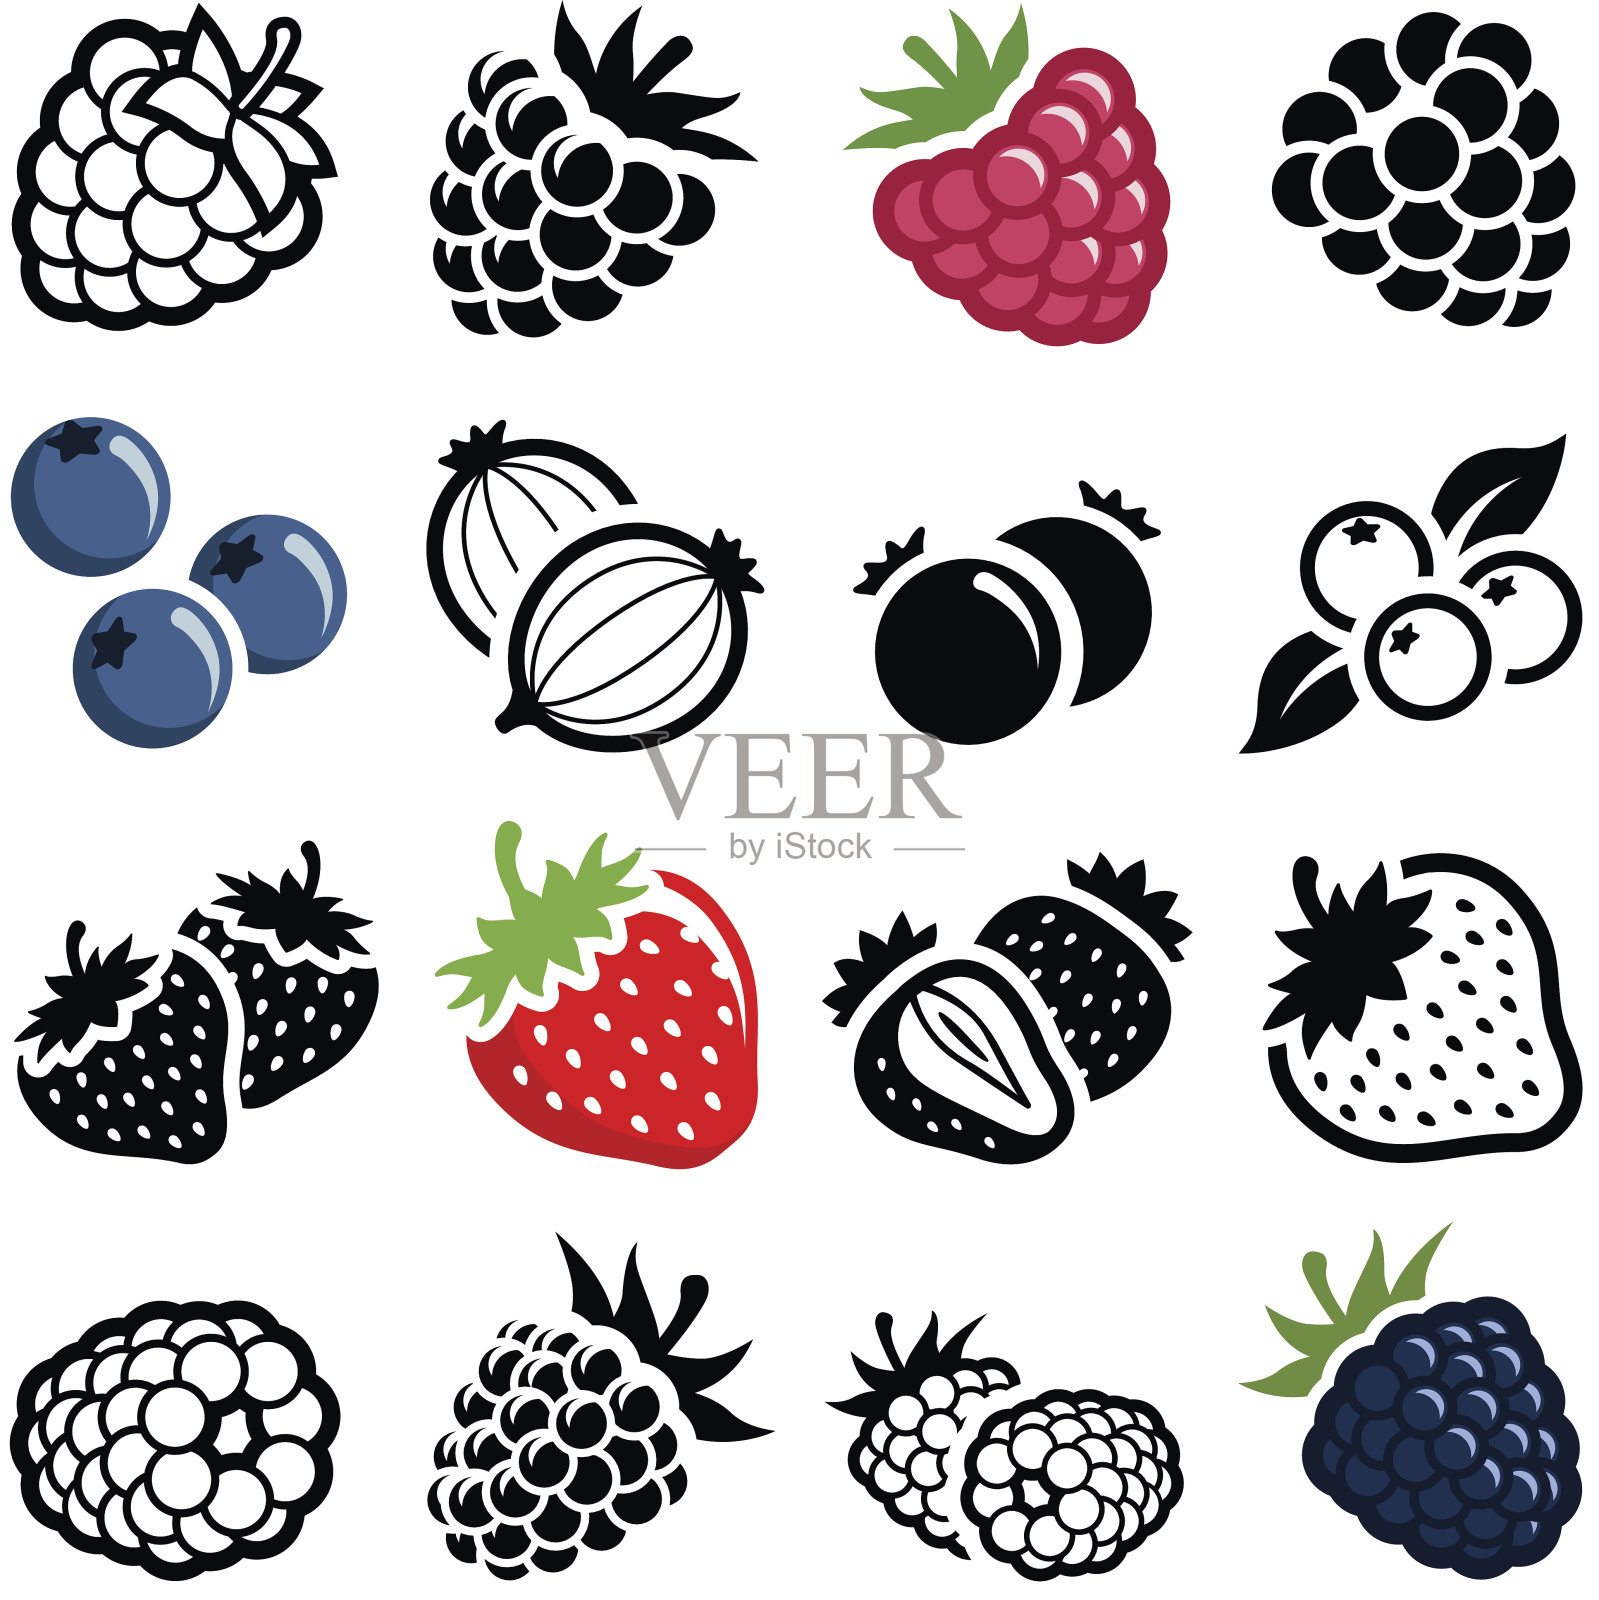 浆果的水果设计元素图片